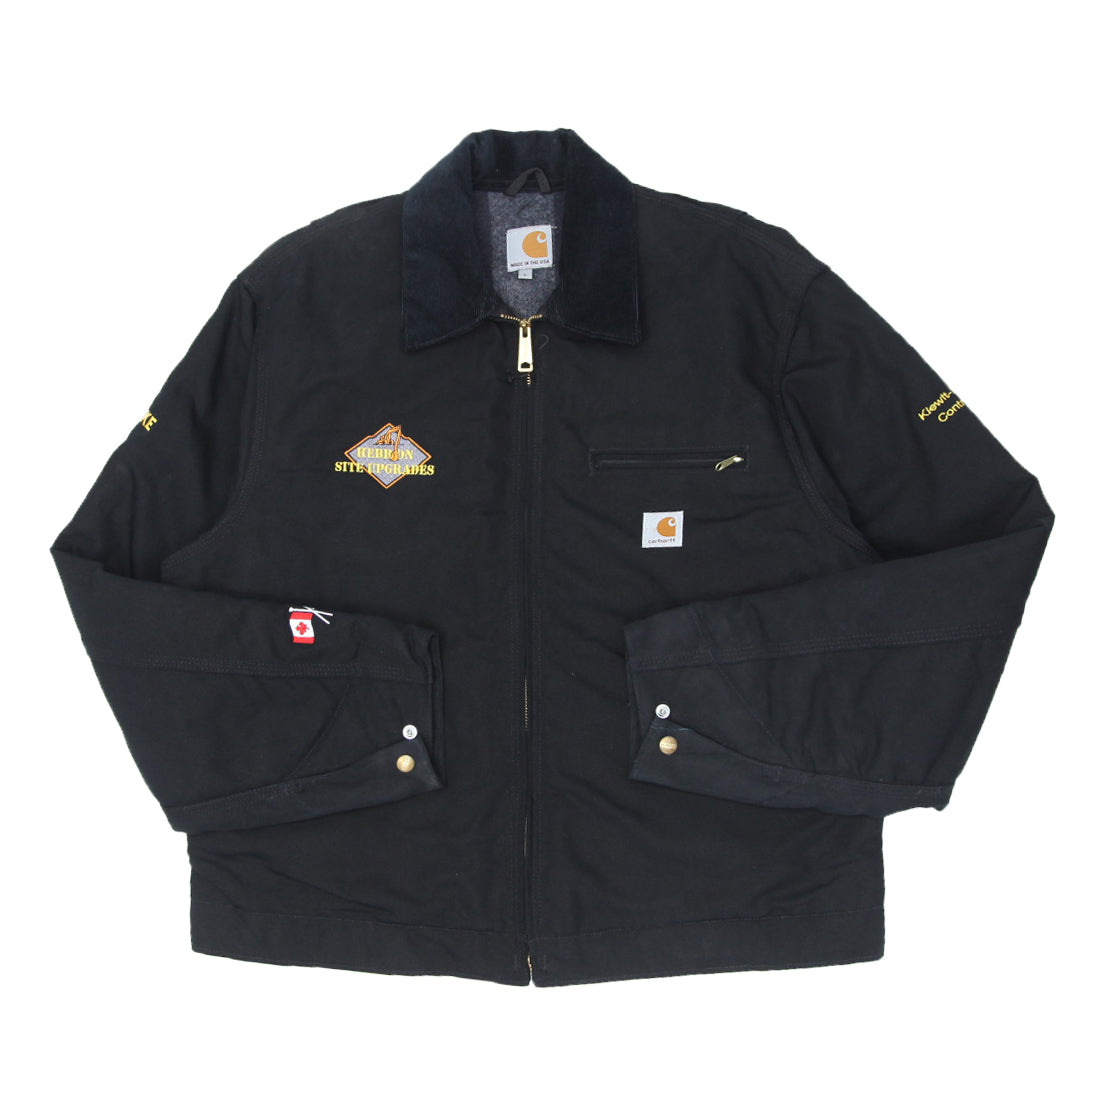 Vintage Carhartt J001 BLK Blanket Lined Detroit Jacket Made In USA